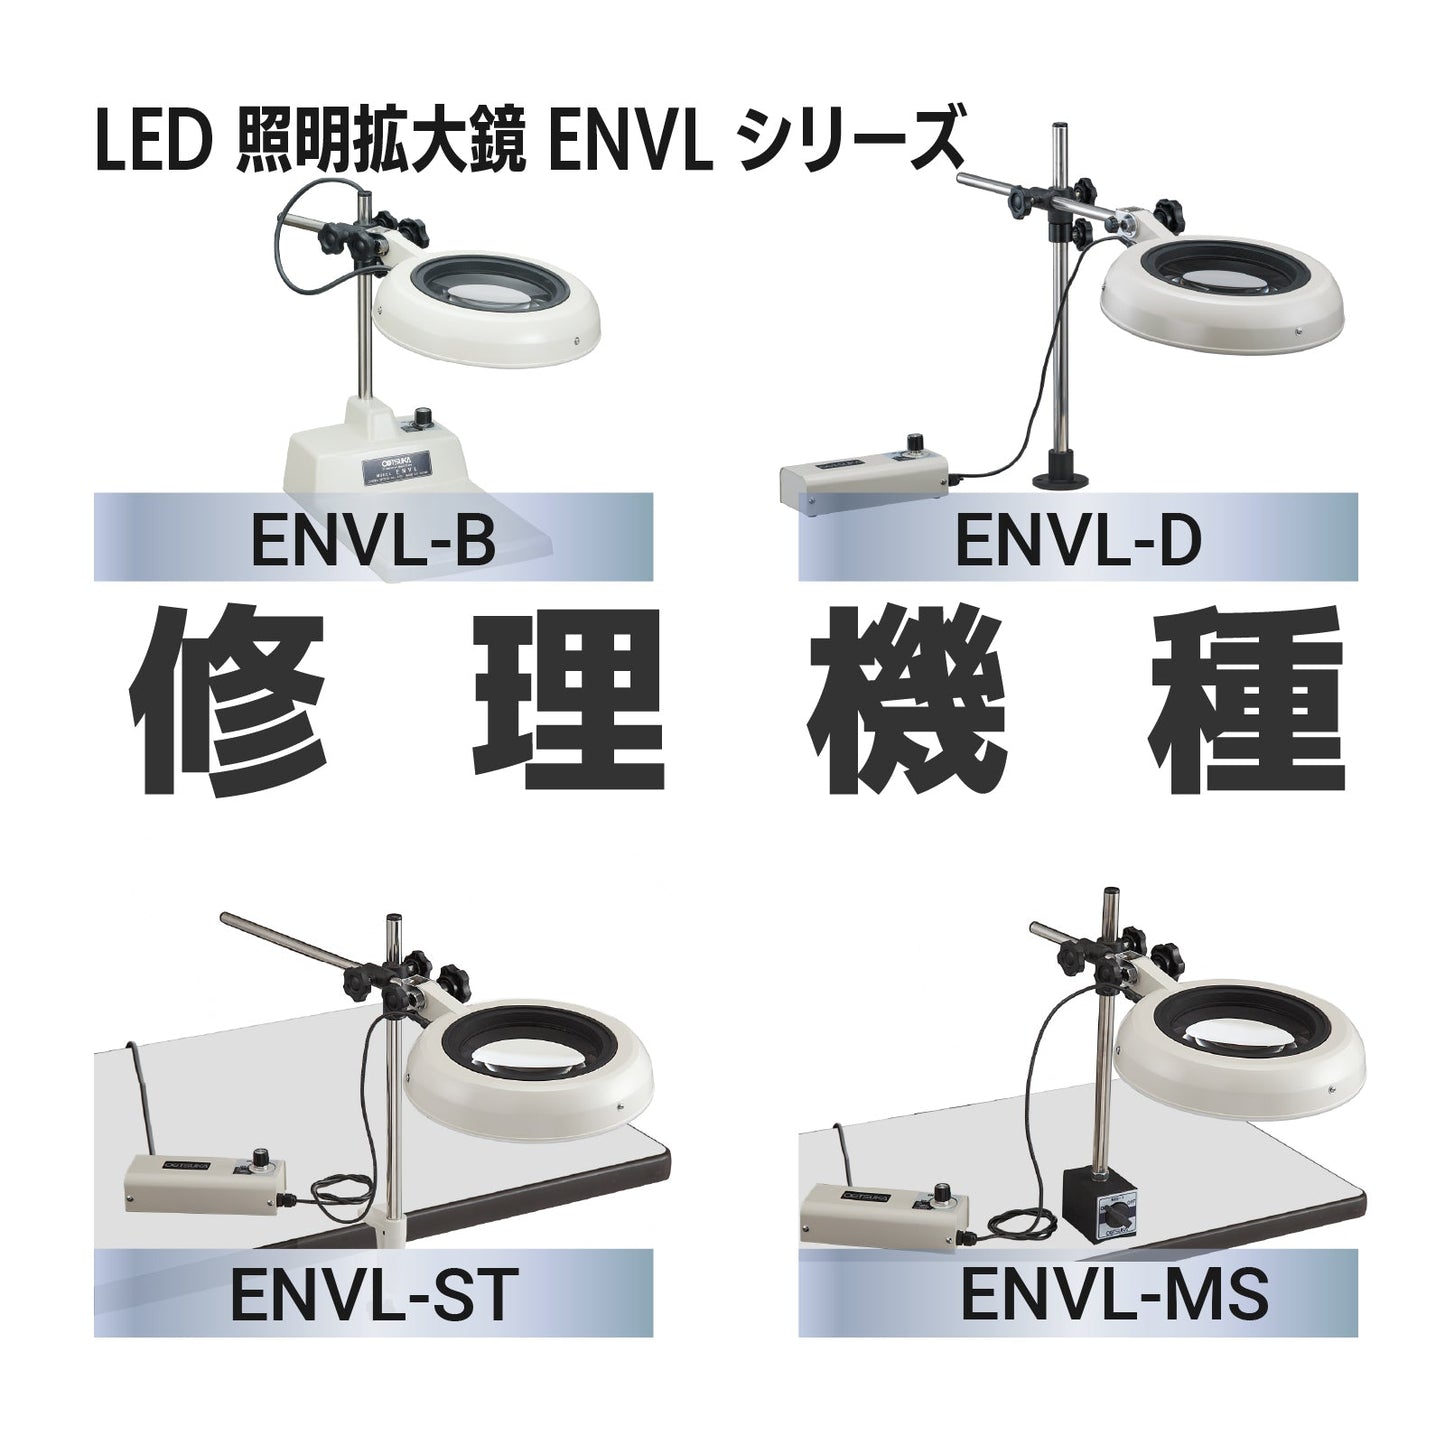 Serie ENVL: ENVL-B, D, ST, MS